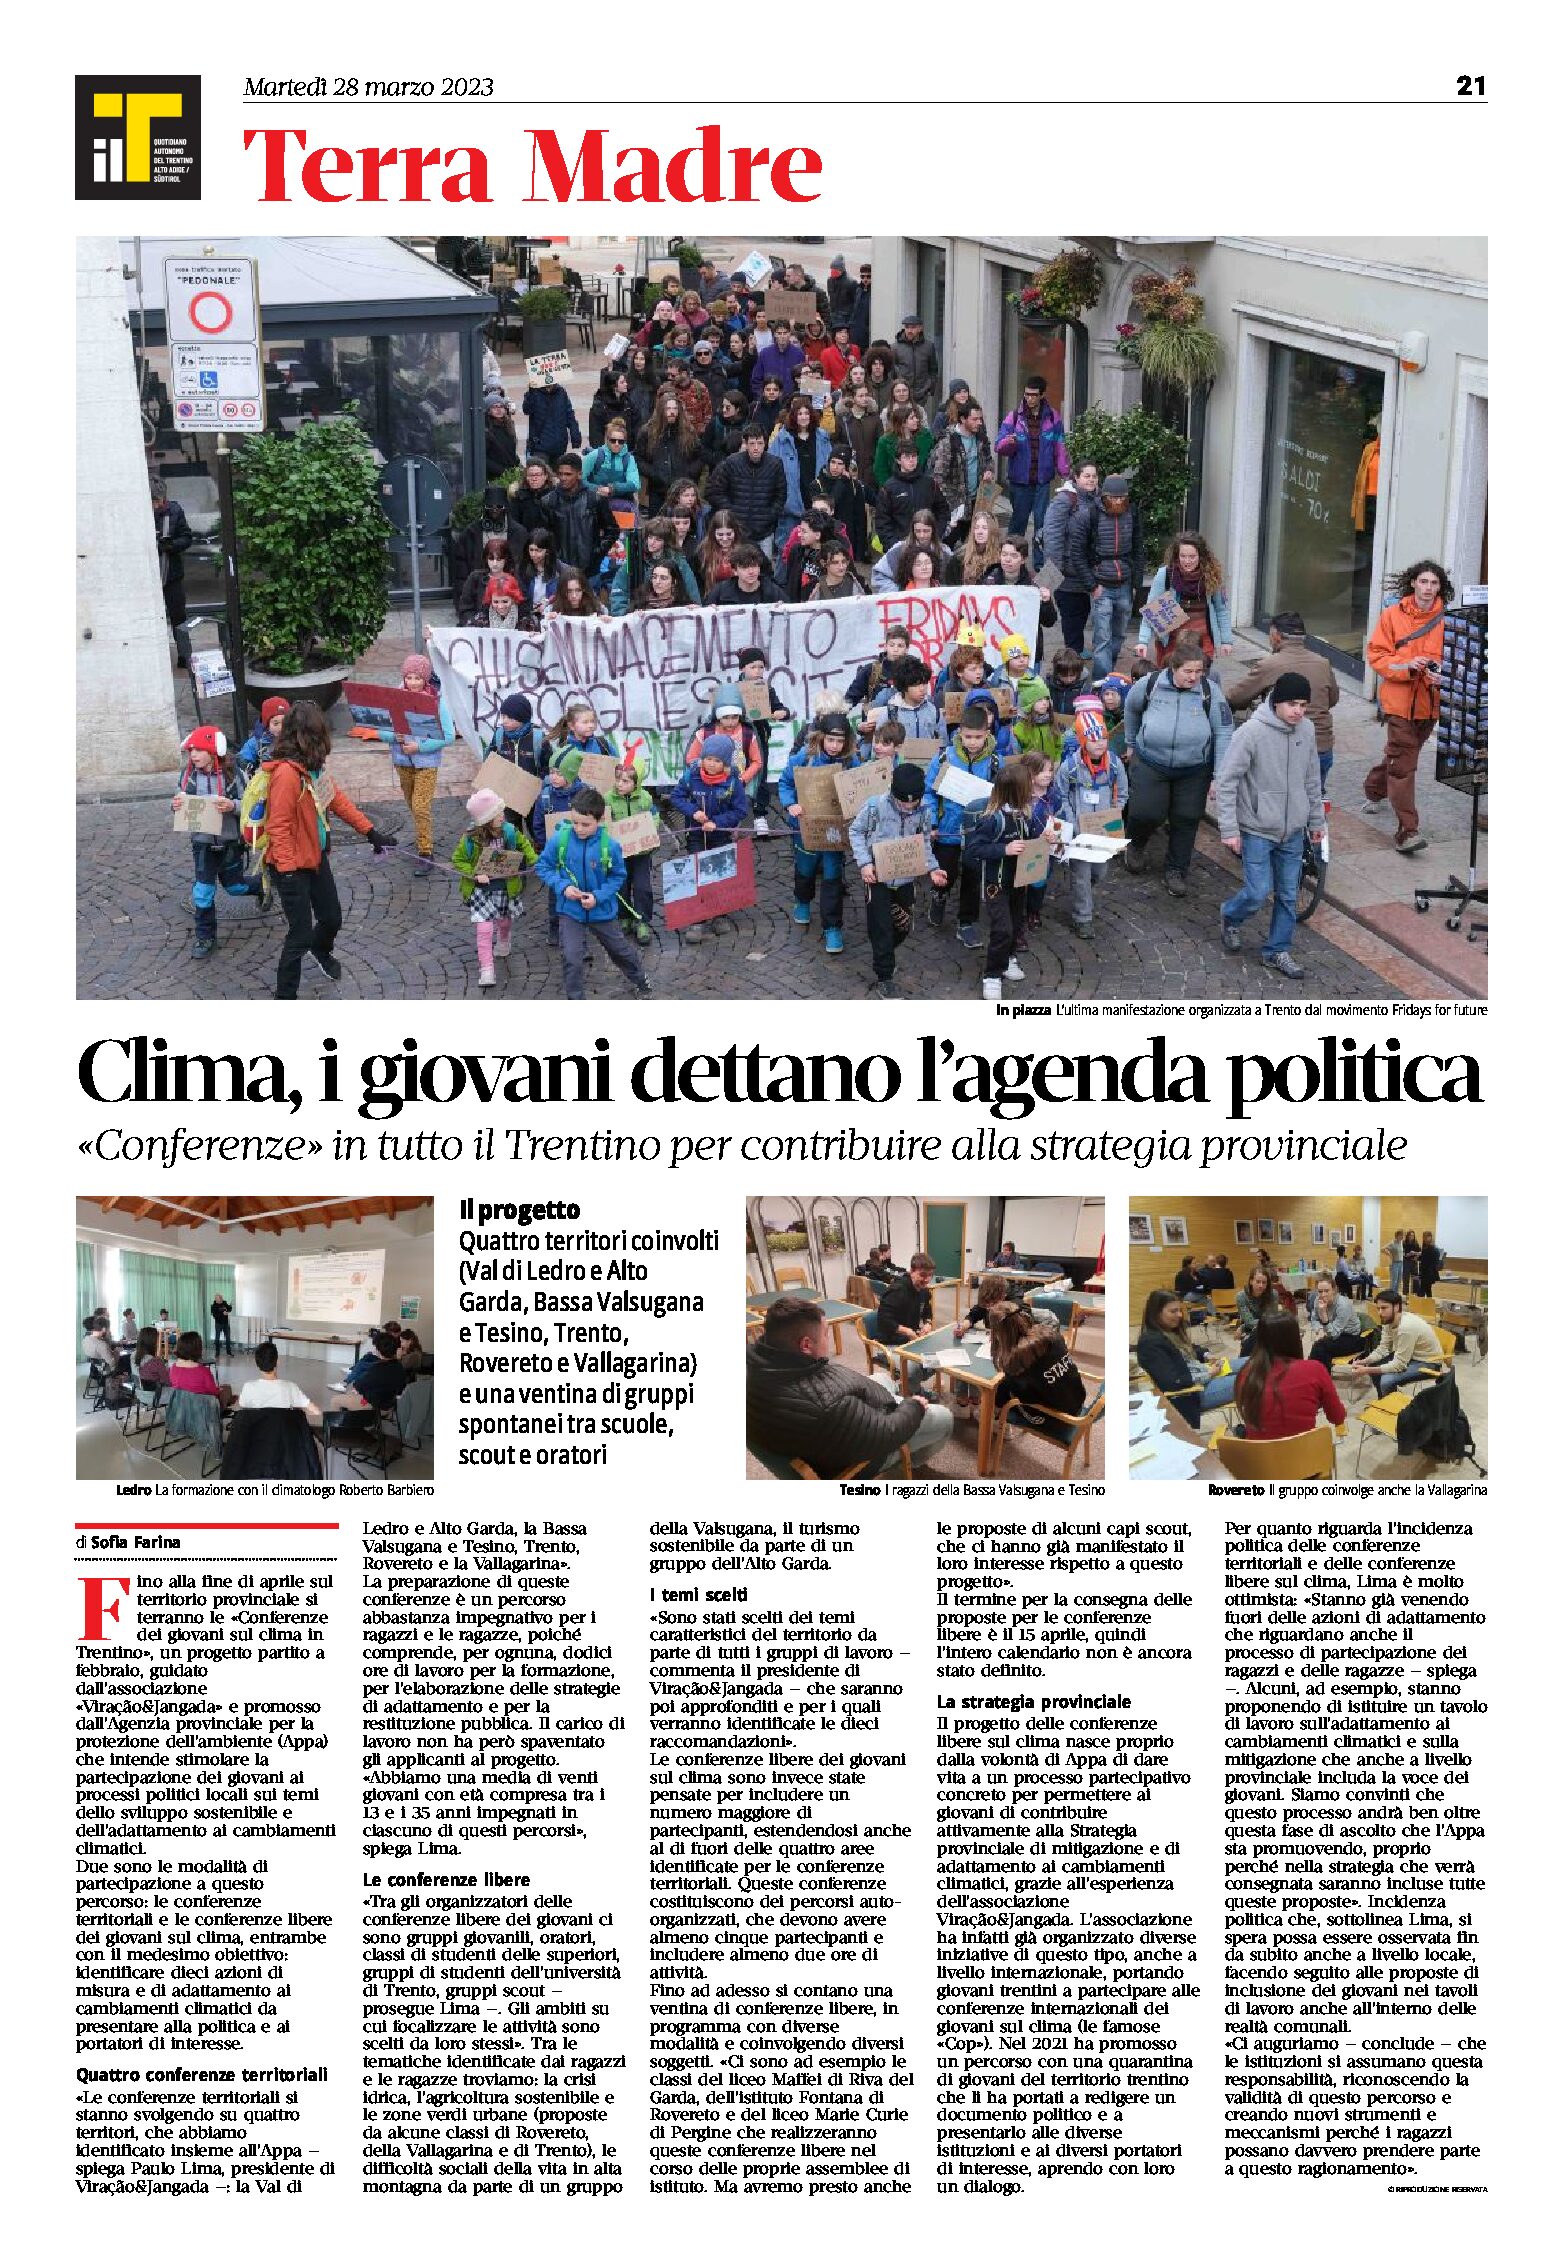 Clima: i giovani dettano l’agenda politica. “Conferenze” in tutto il Trentino